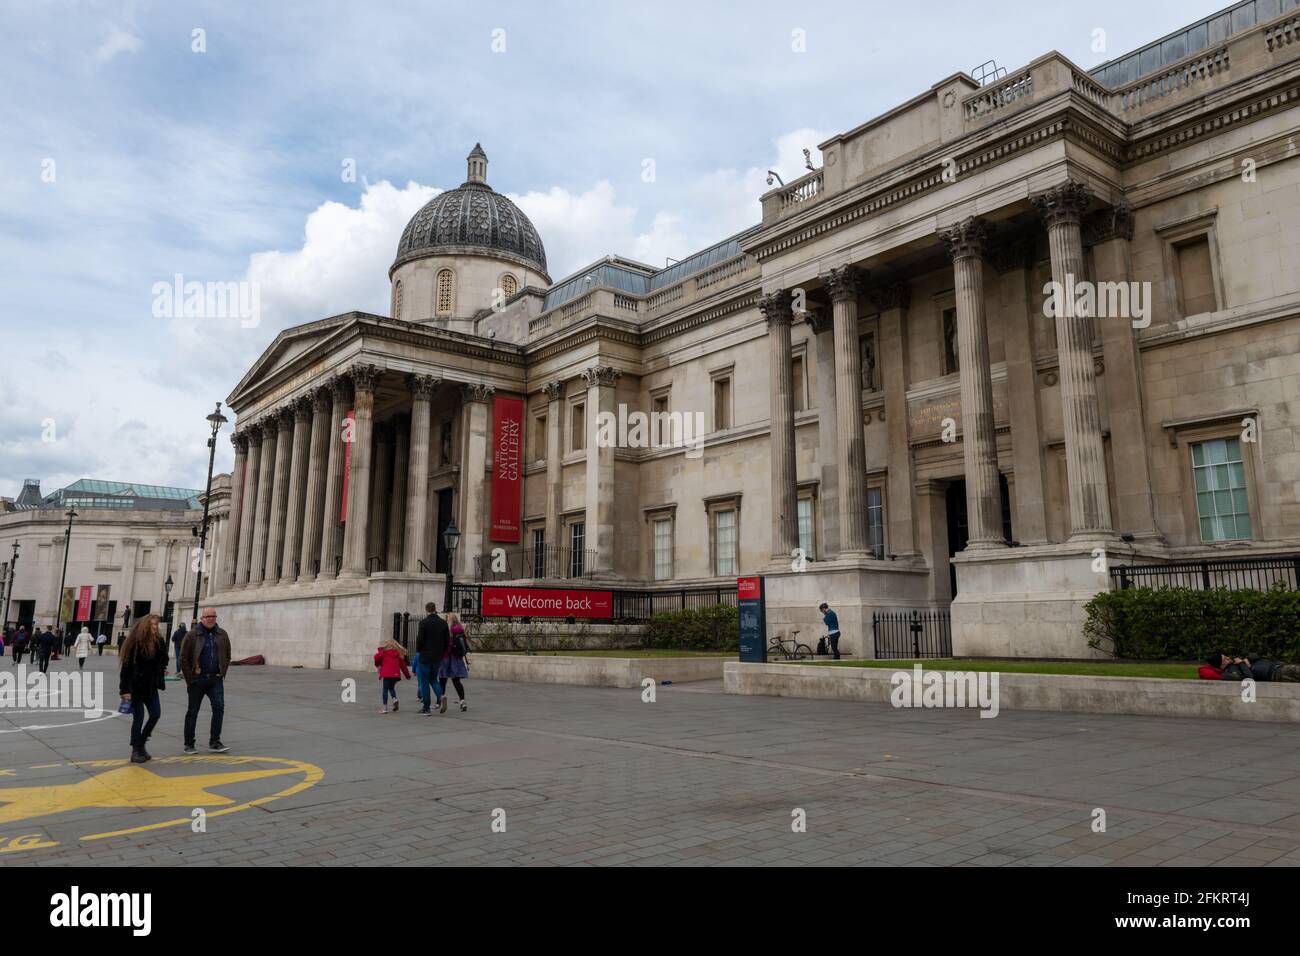 Vue sur la rue de la célèbre galerie nationale de Trafalgar Square. Banque D'Images